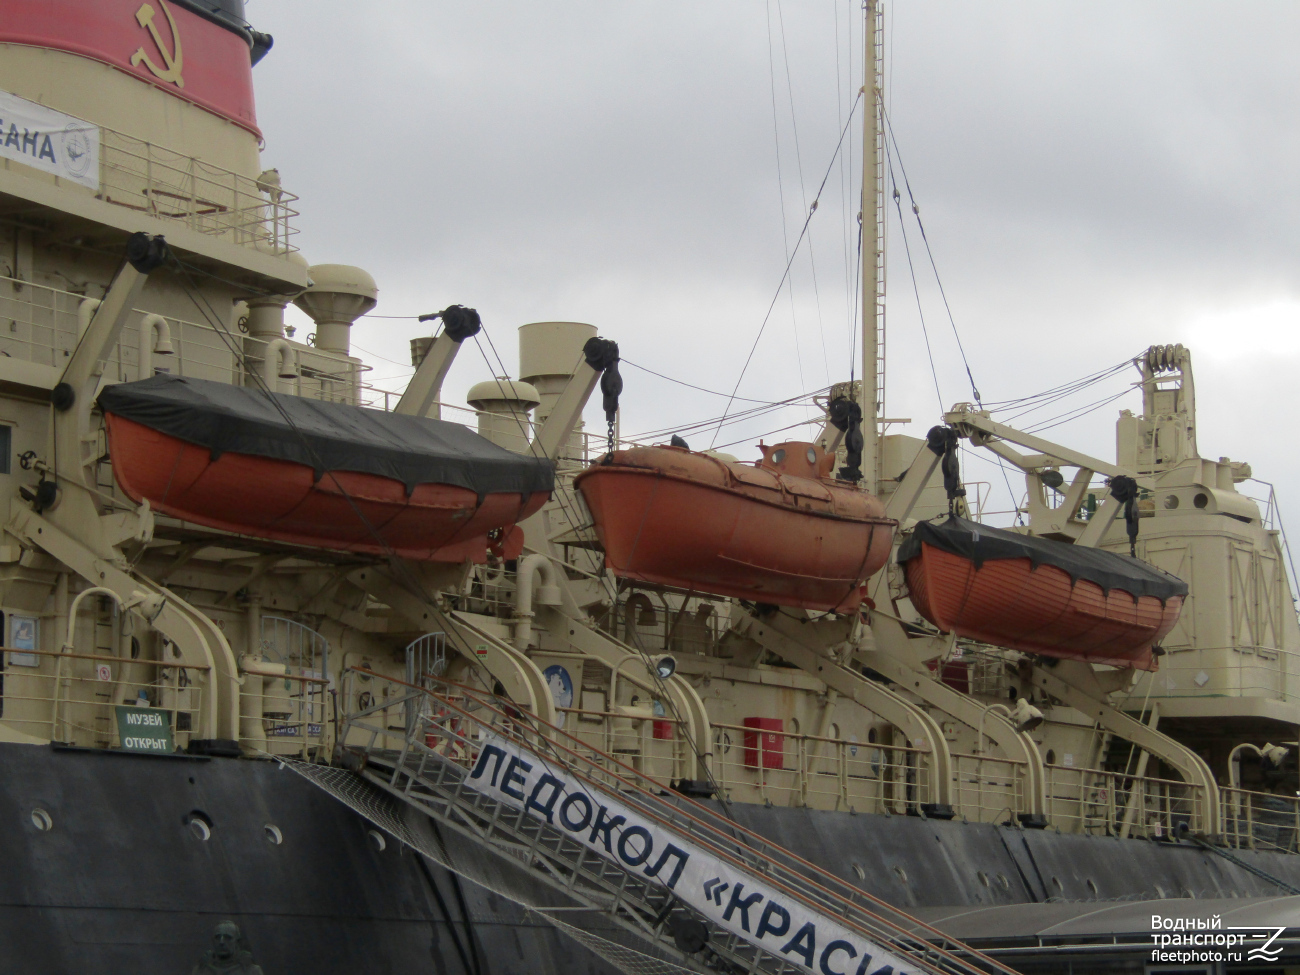 Красин. Lifeboats